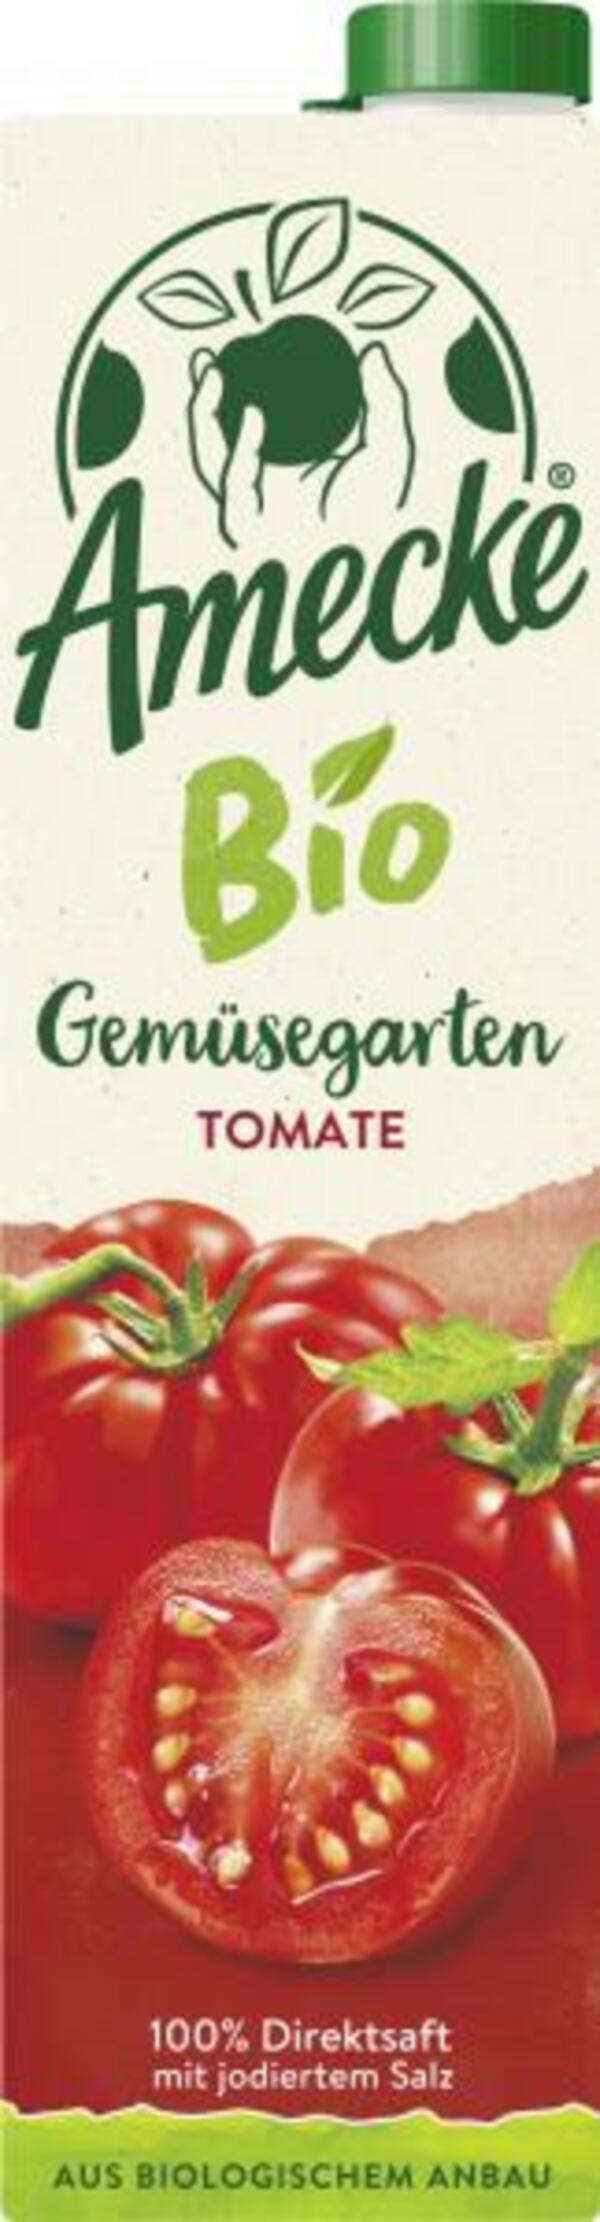 Bild 1 von Amecke Bio Gemüsegarten Tomate